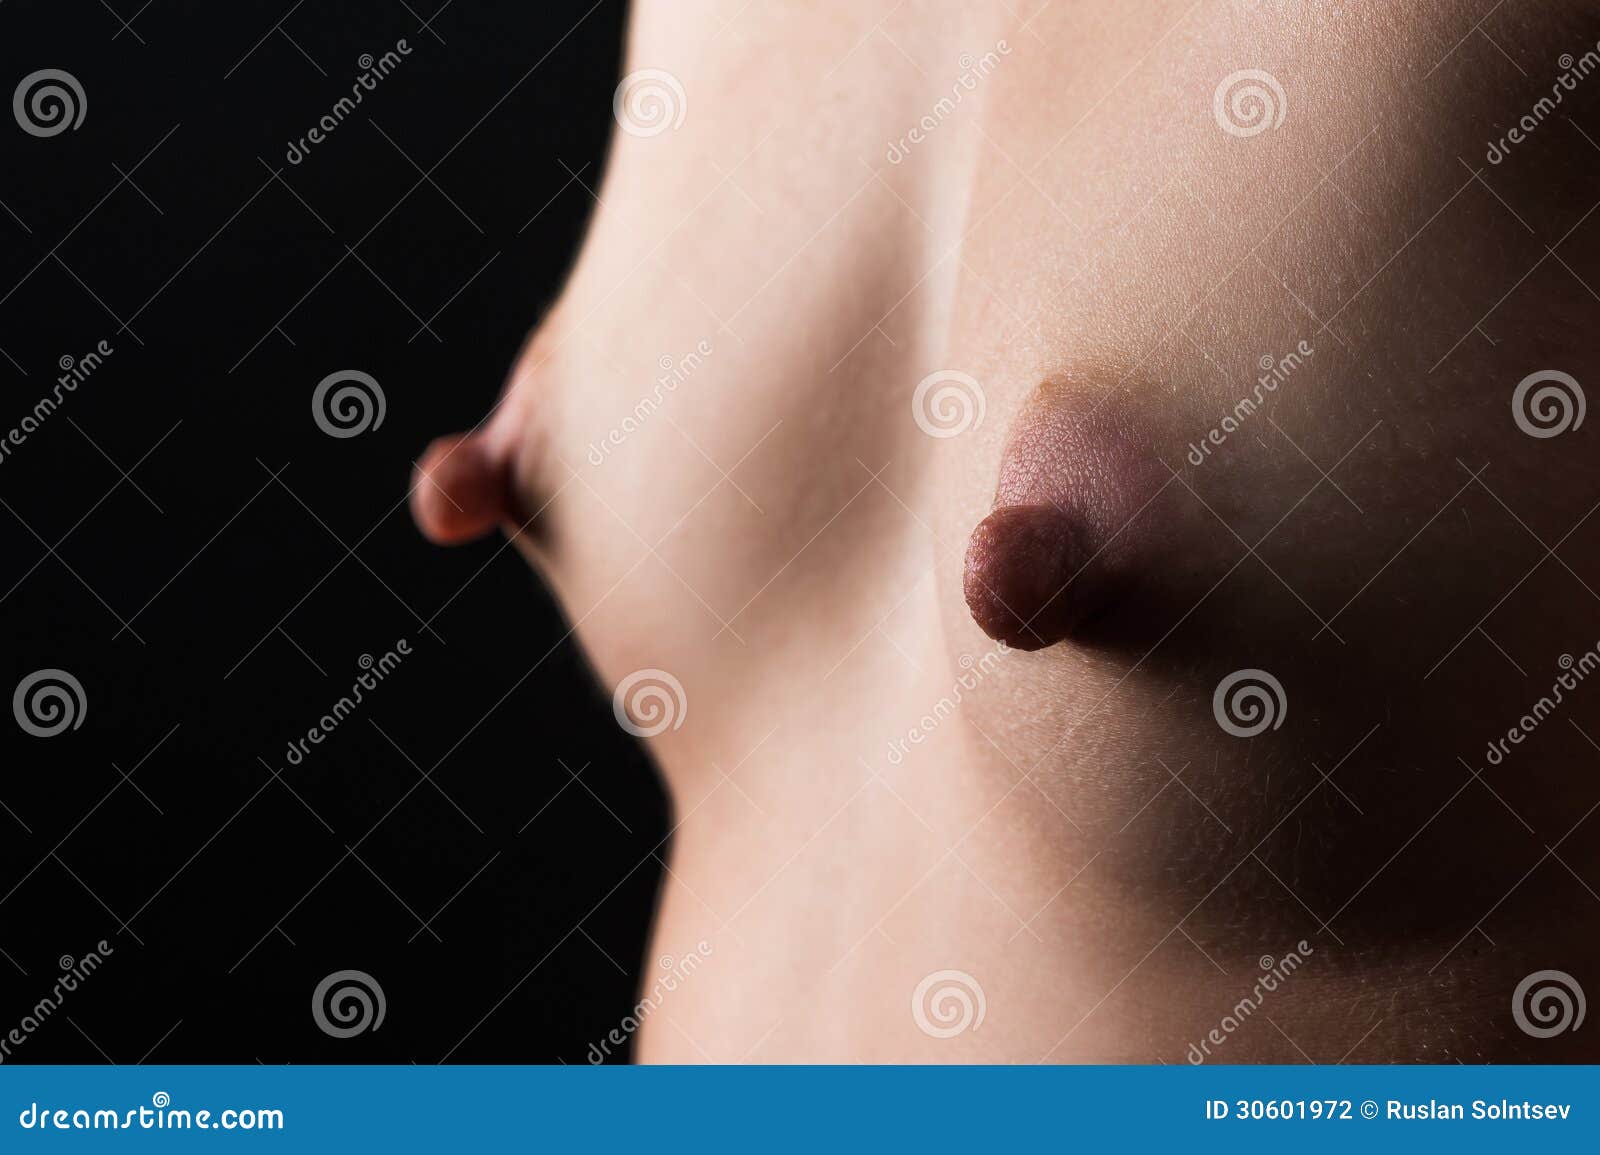 Large nipples